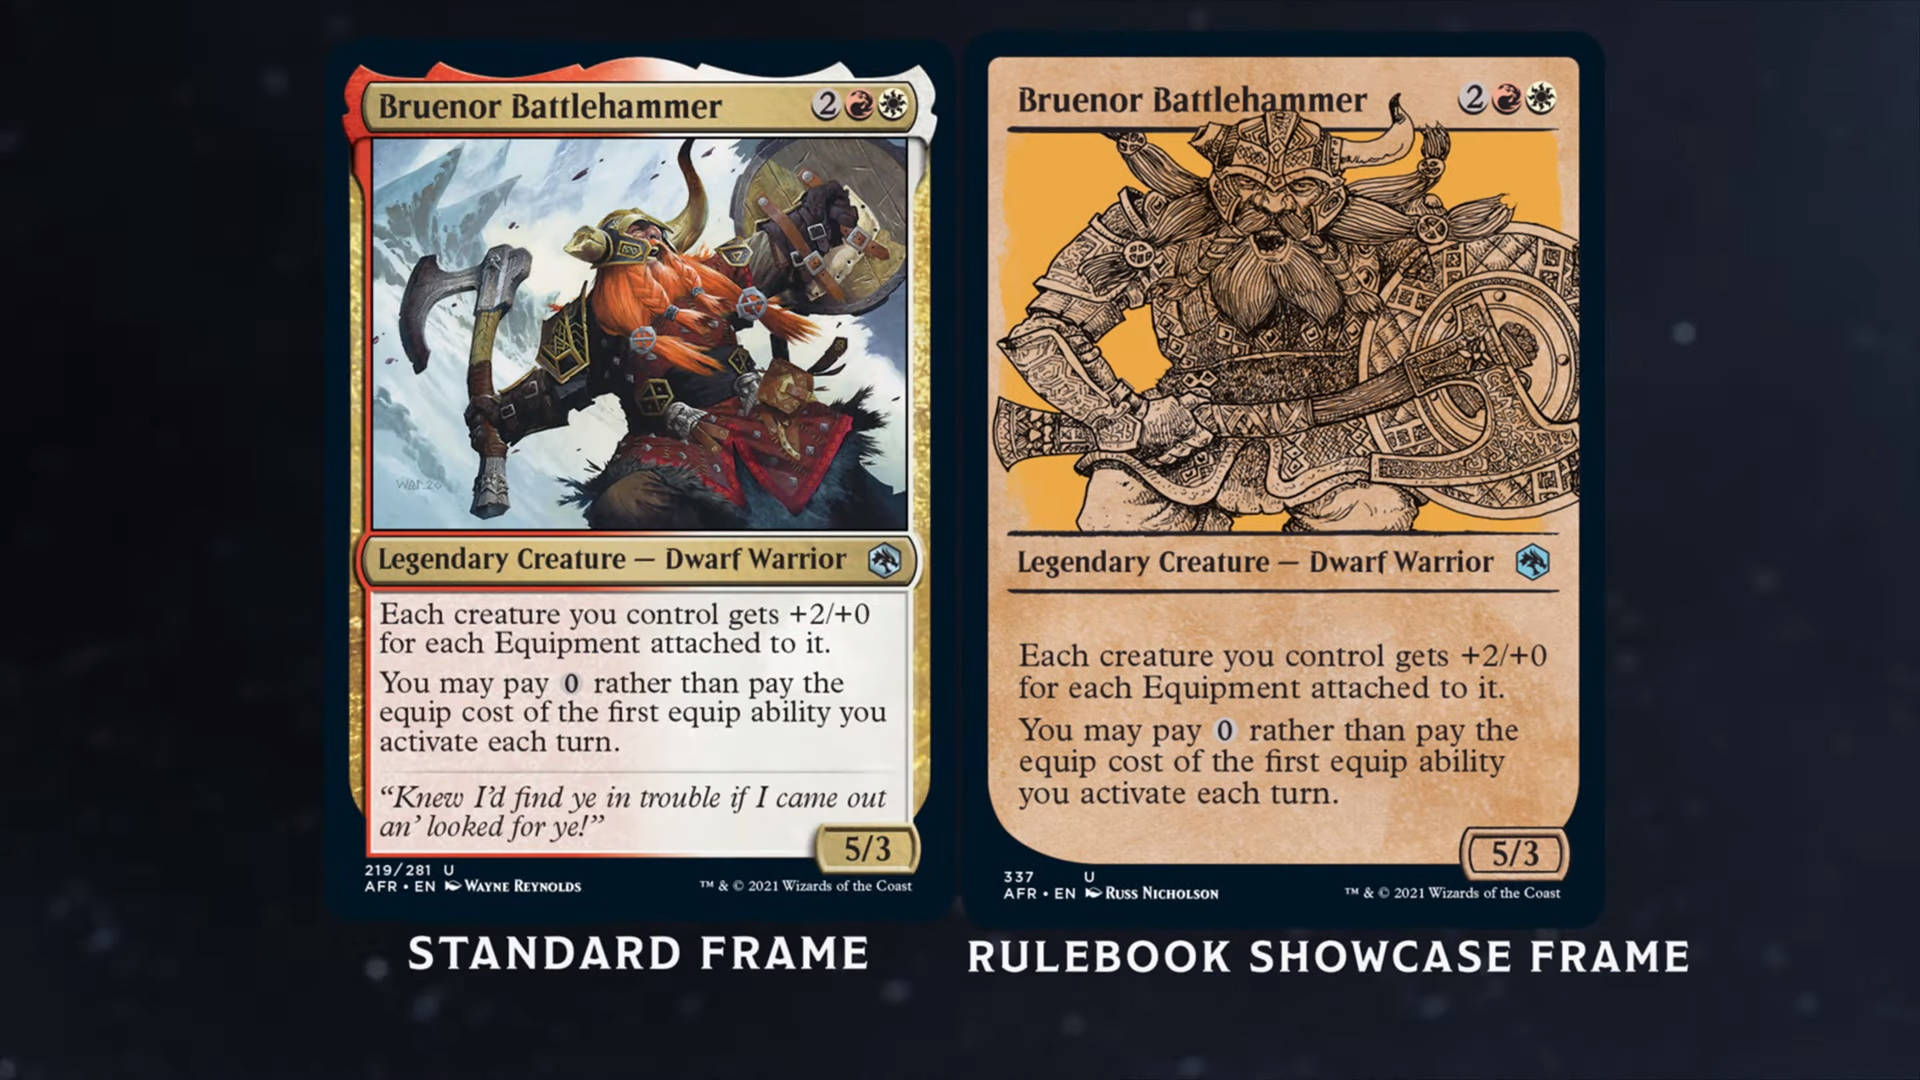 Magic: The Gathering Drizzt Do'Urden Forgotten Realms Bruenor Battlehammer card